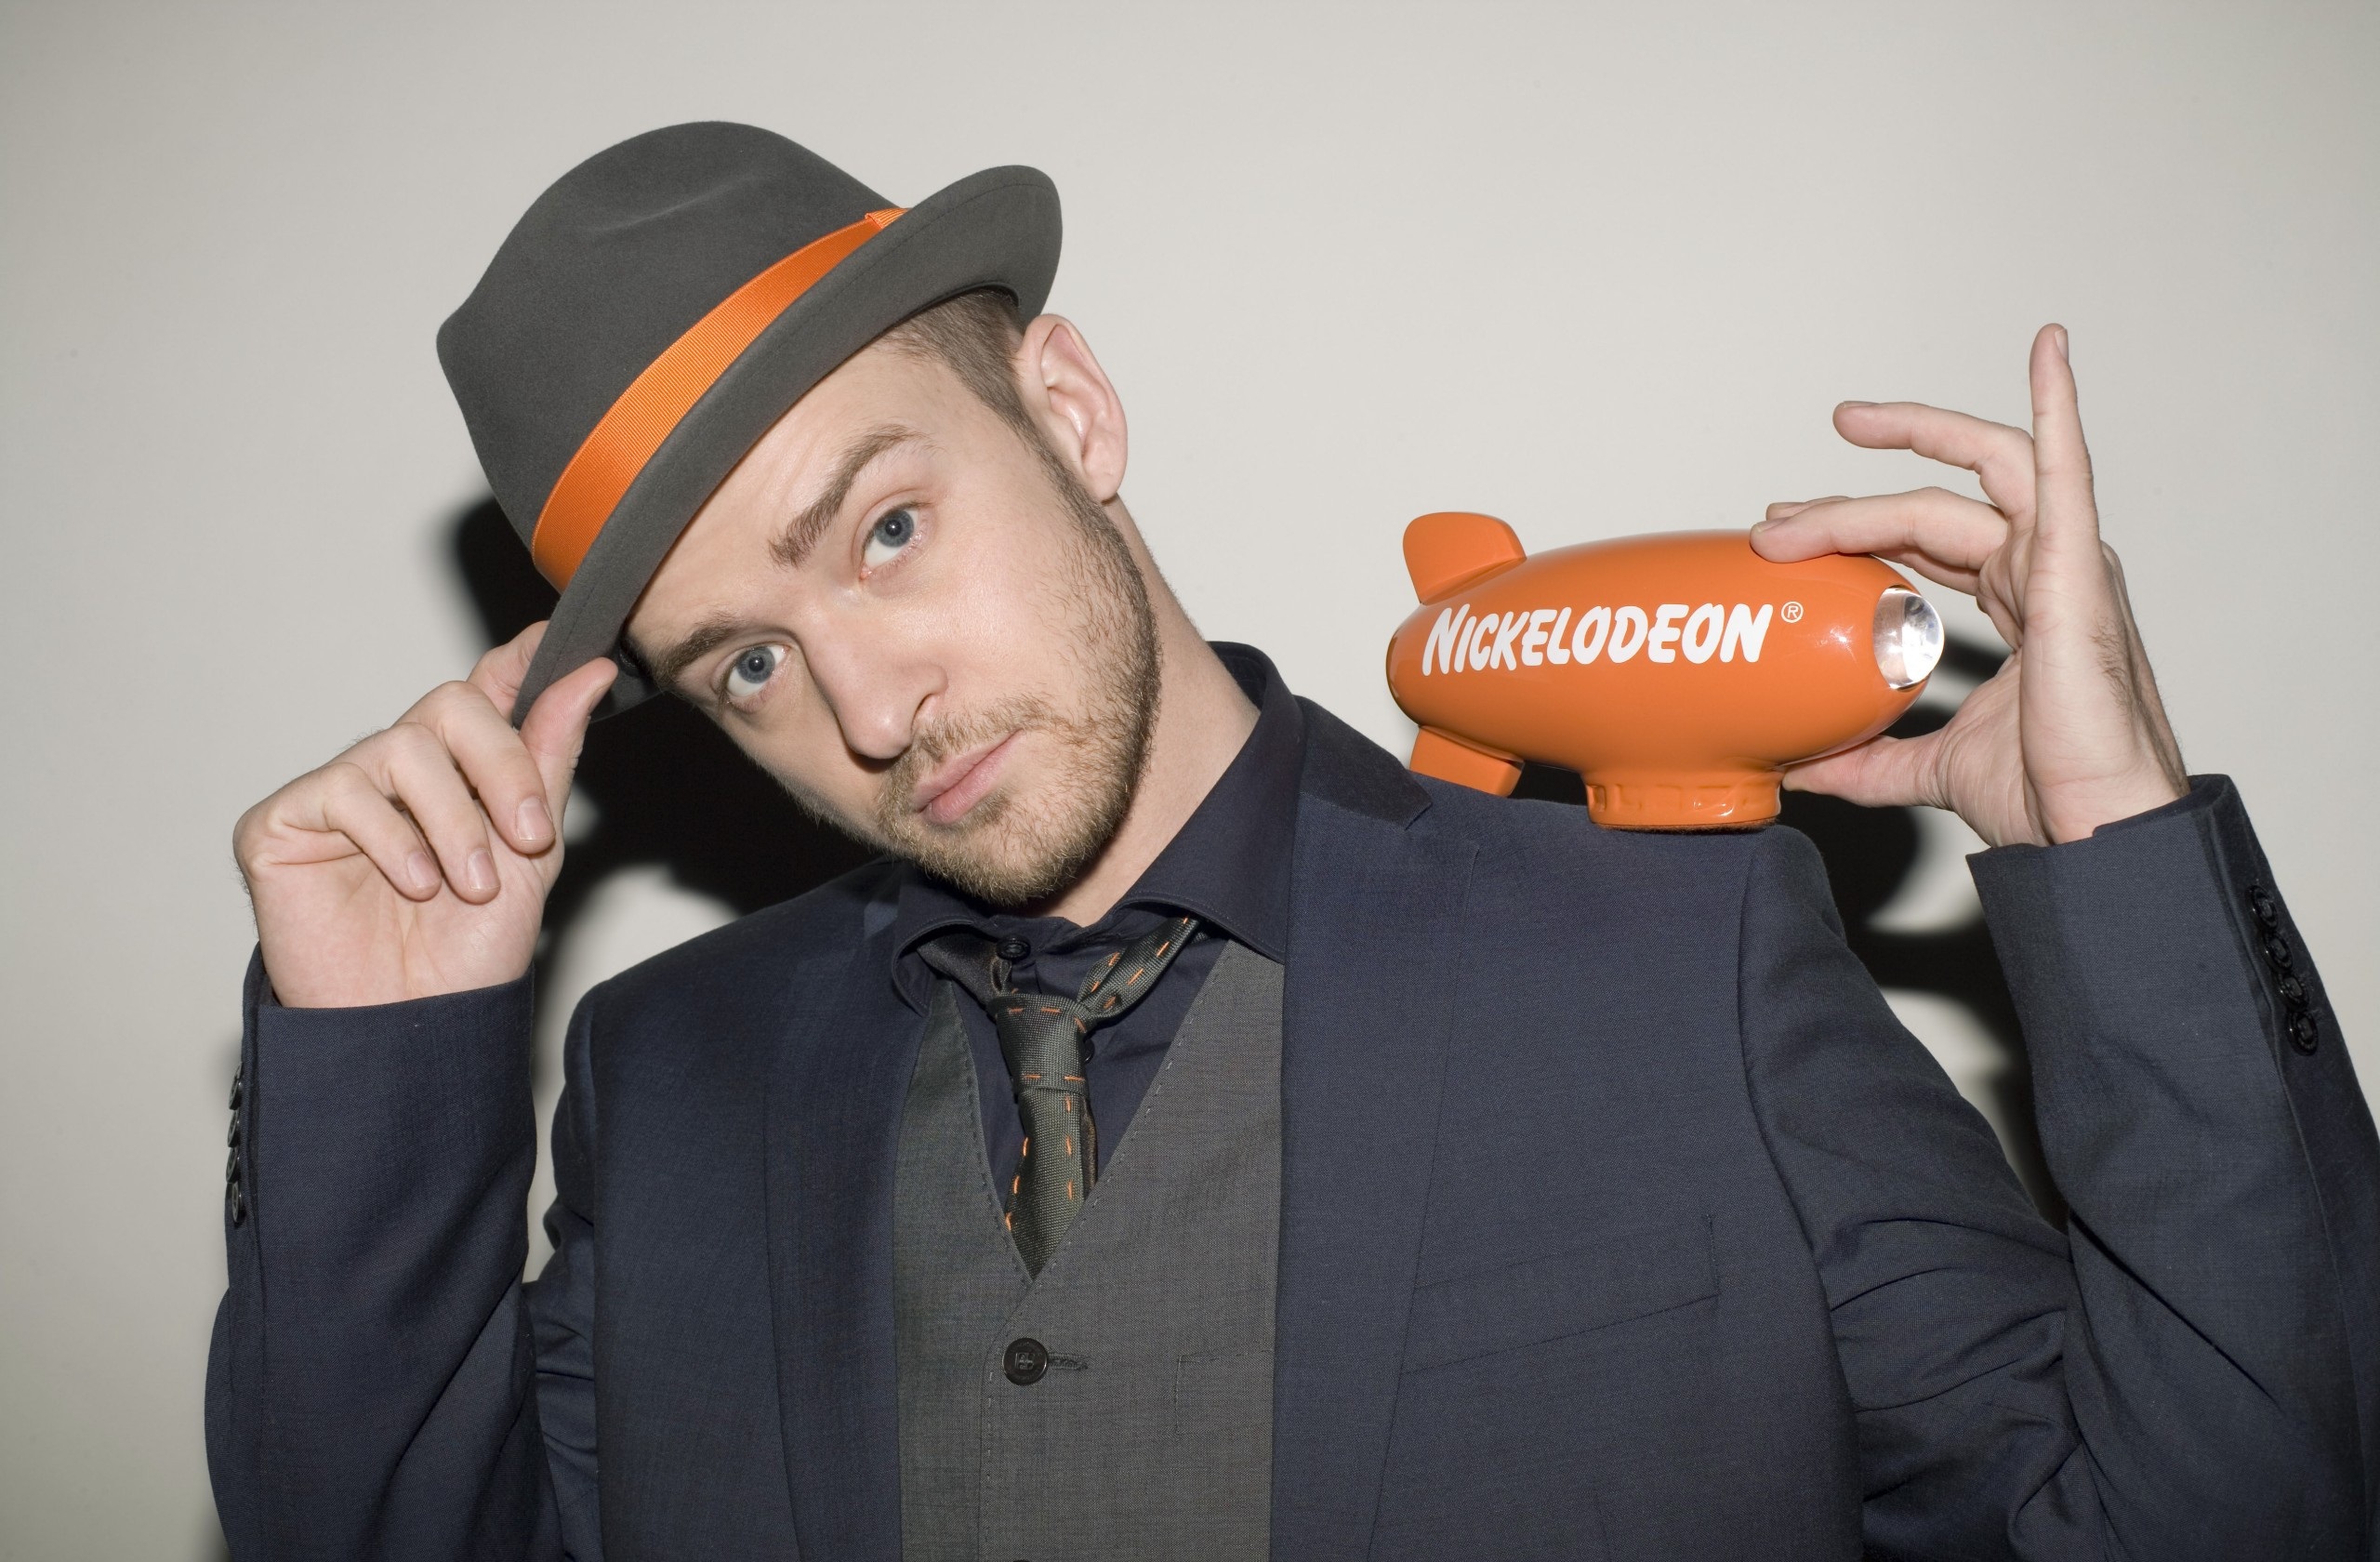 American Blue Eyes Hat Justin Timberlake Nickelodeon Singer Suit 2560x1680